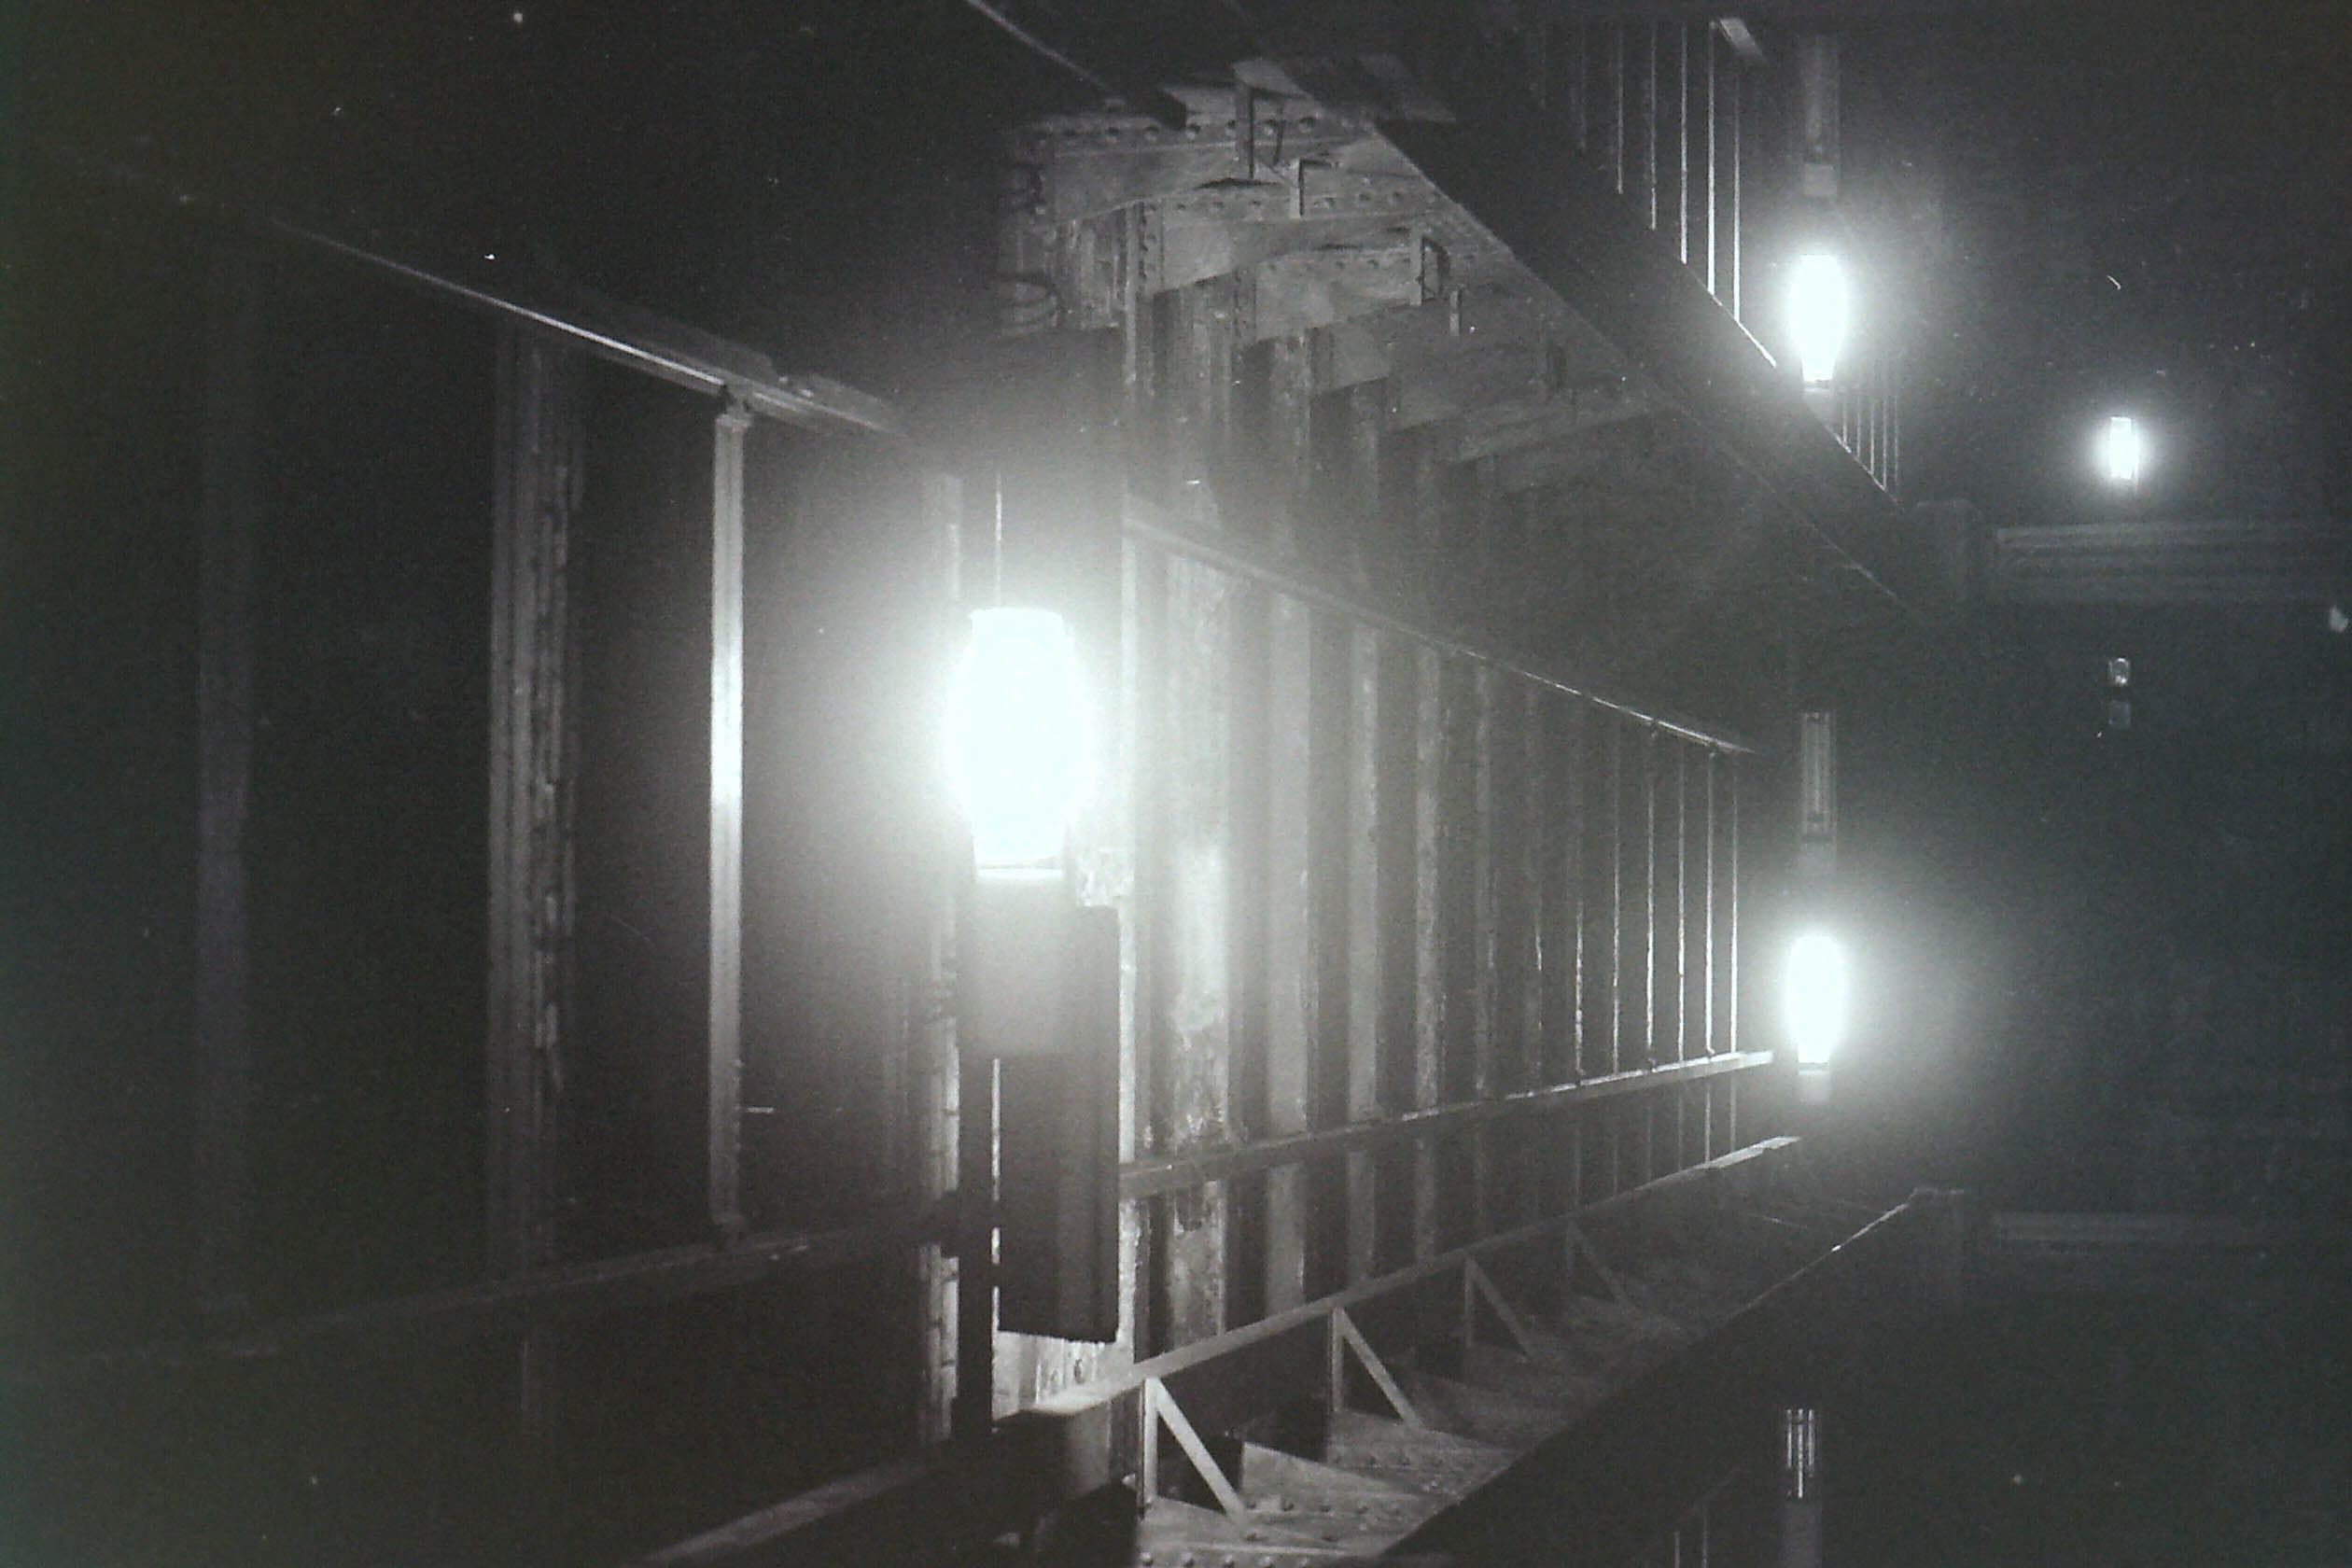 mur de vaisseau spatial avec structure métallique et briques éclairé par des spotlights dans la nuit en noir et blanc